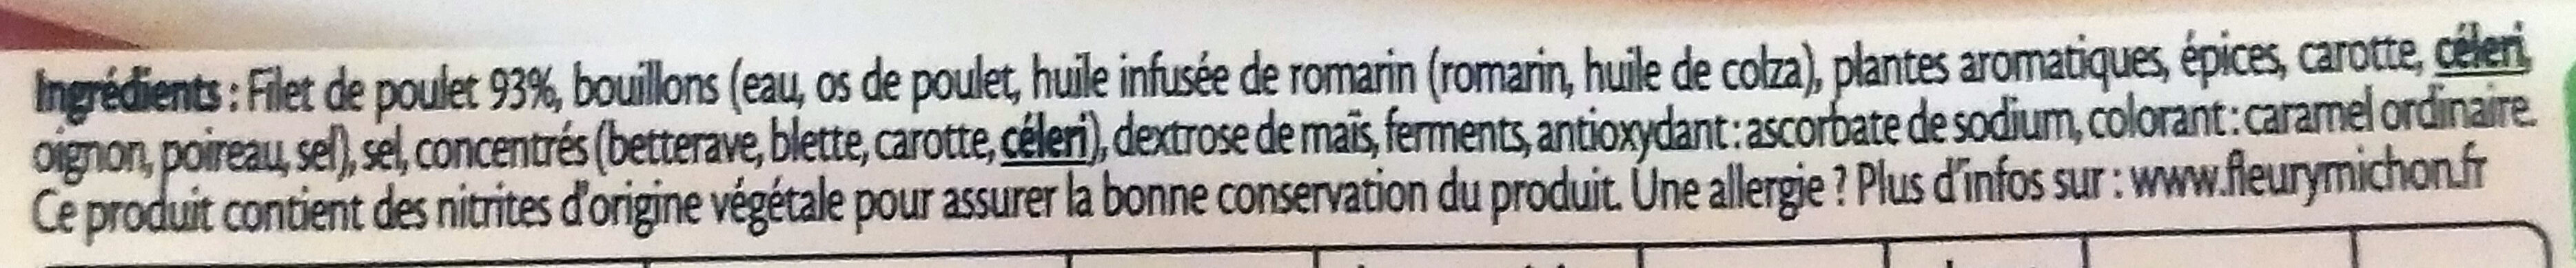 Filet de Poulet - Fumé - المكونات - fr